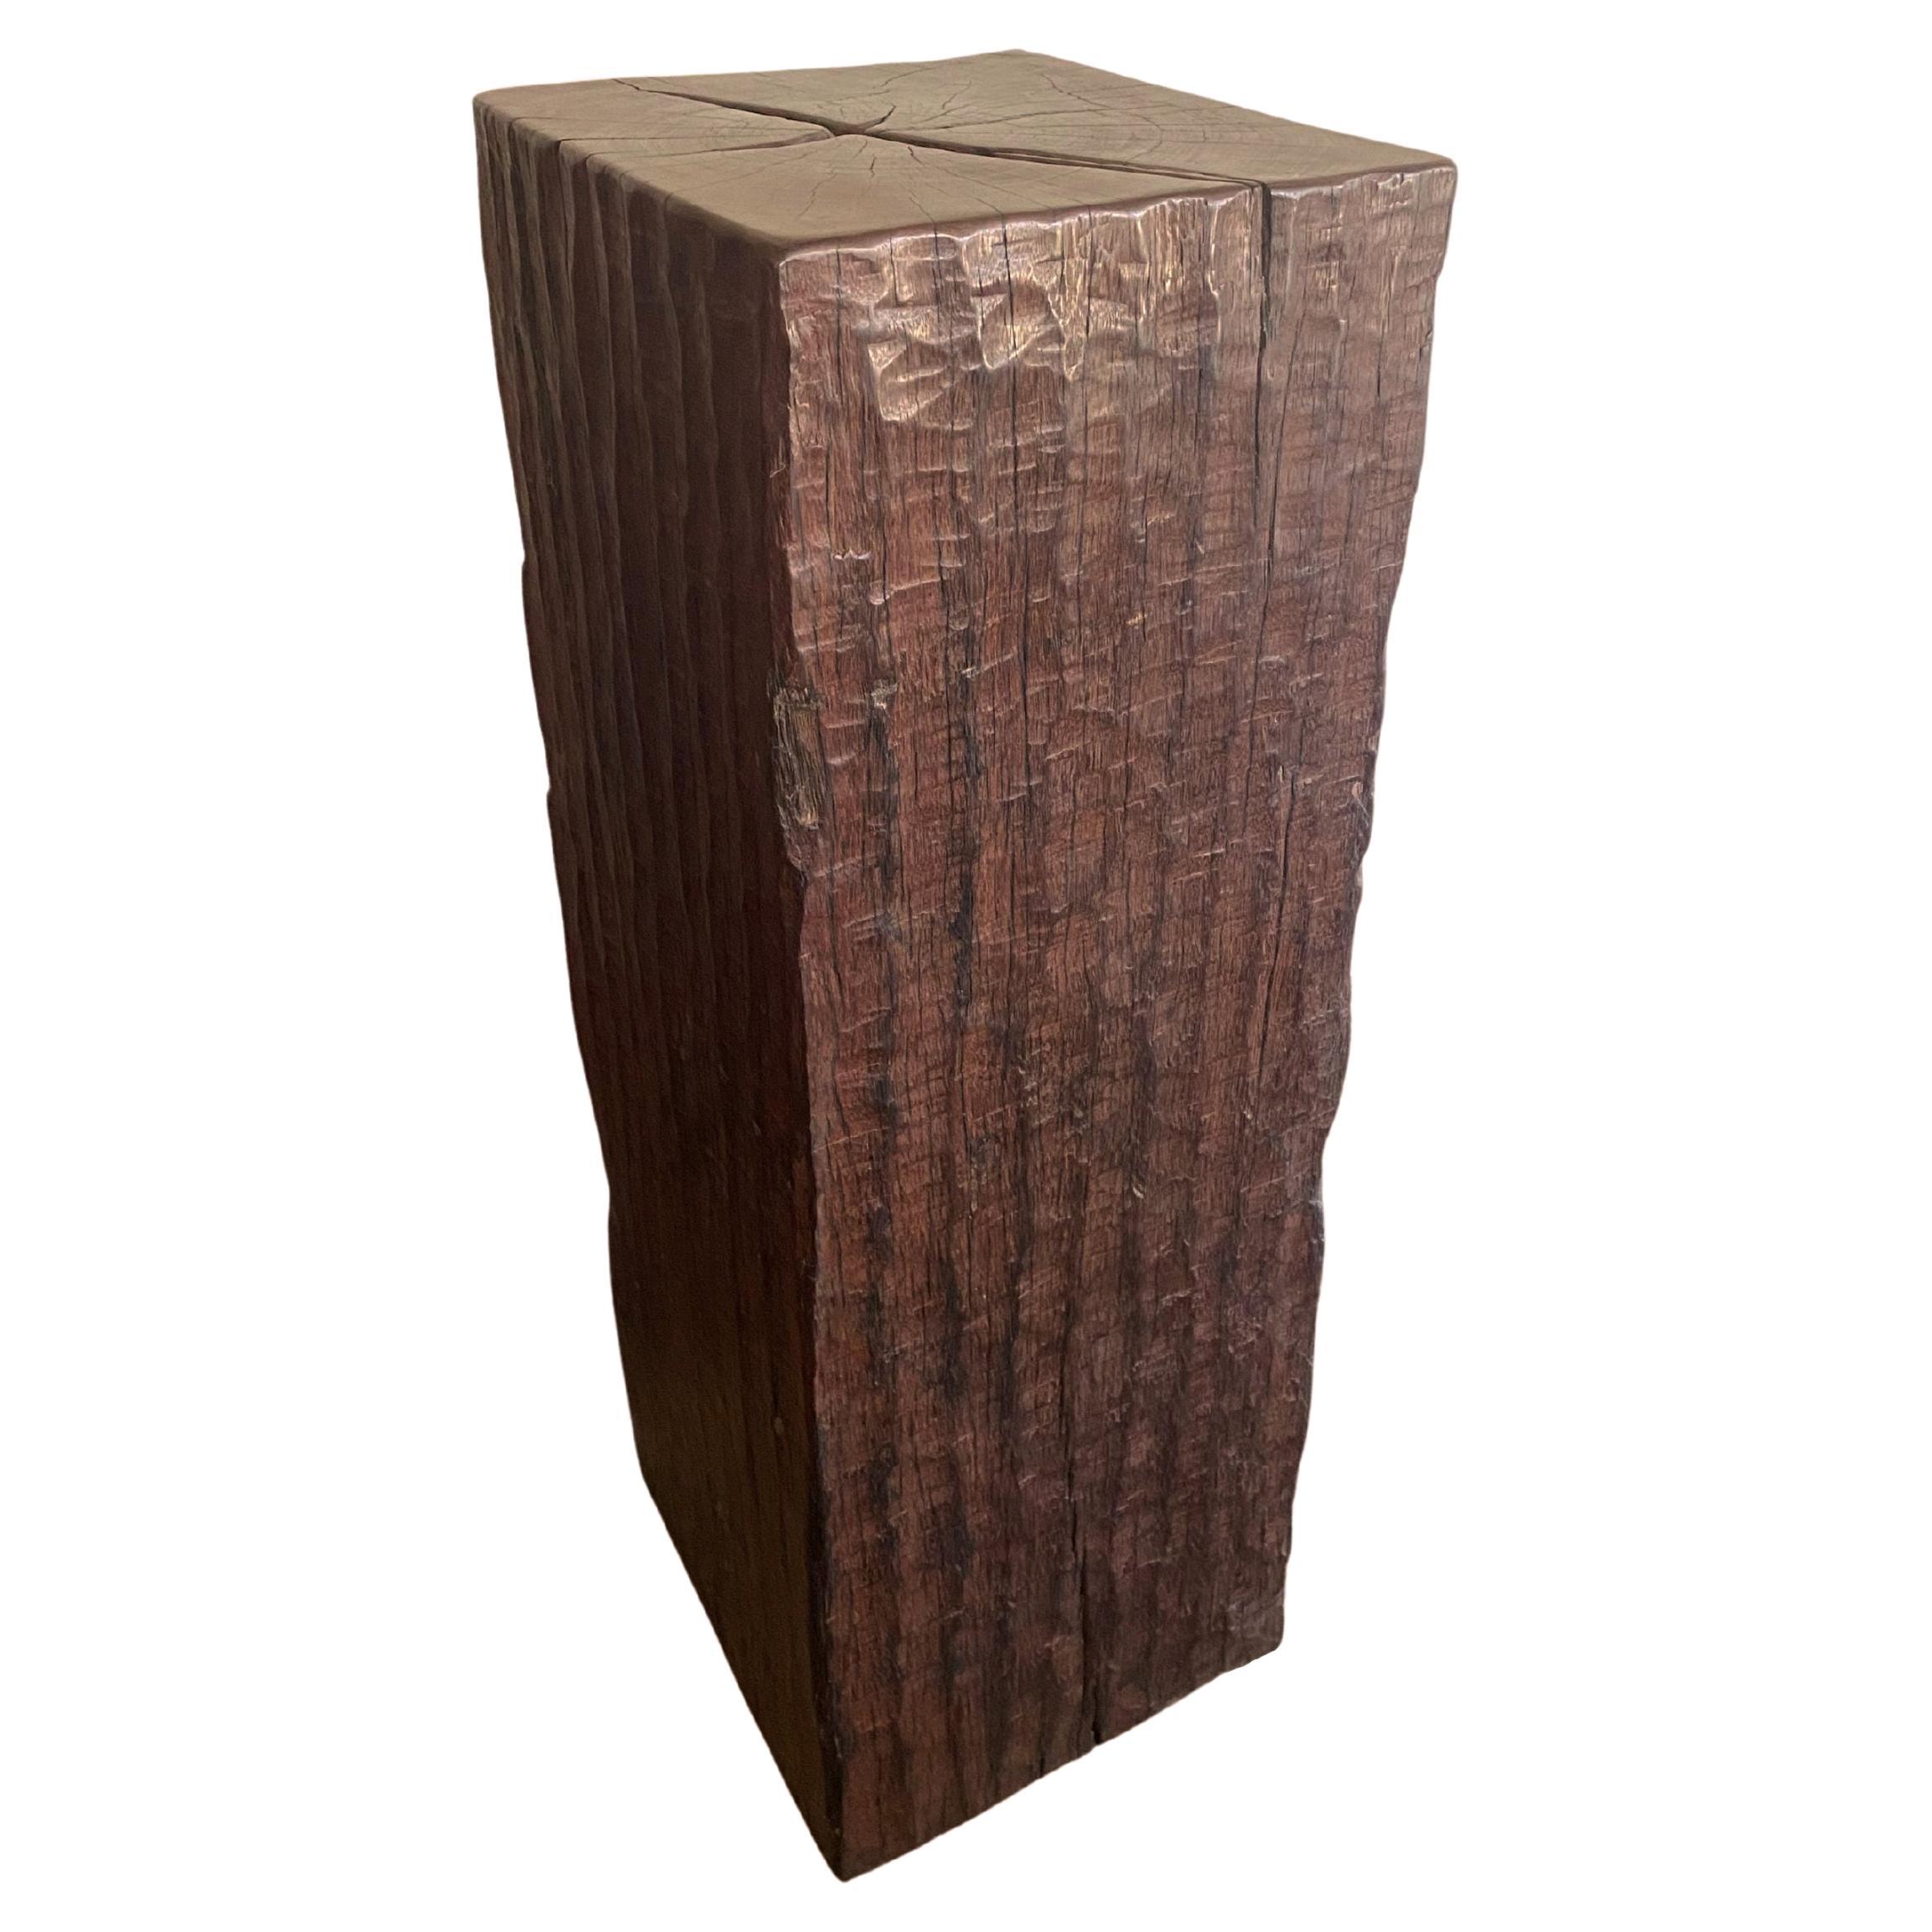 Piédestal en bois de fer massif avec une texture de bois étonnante